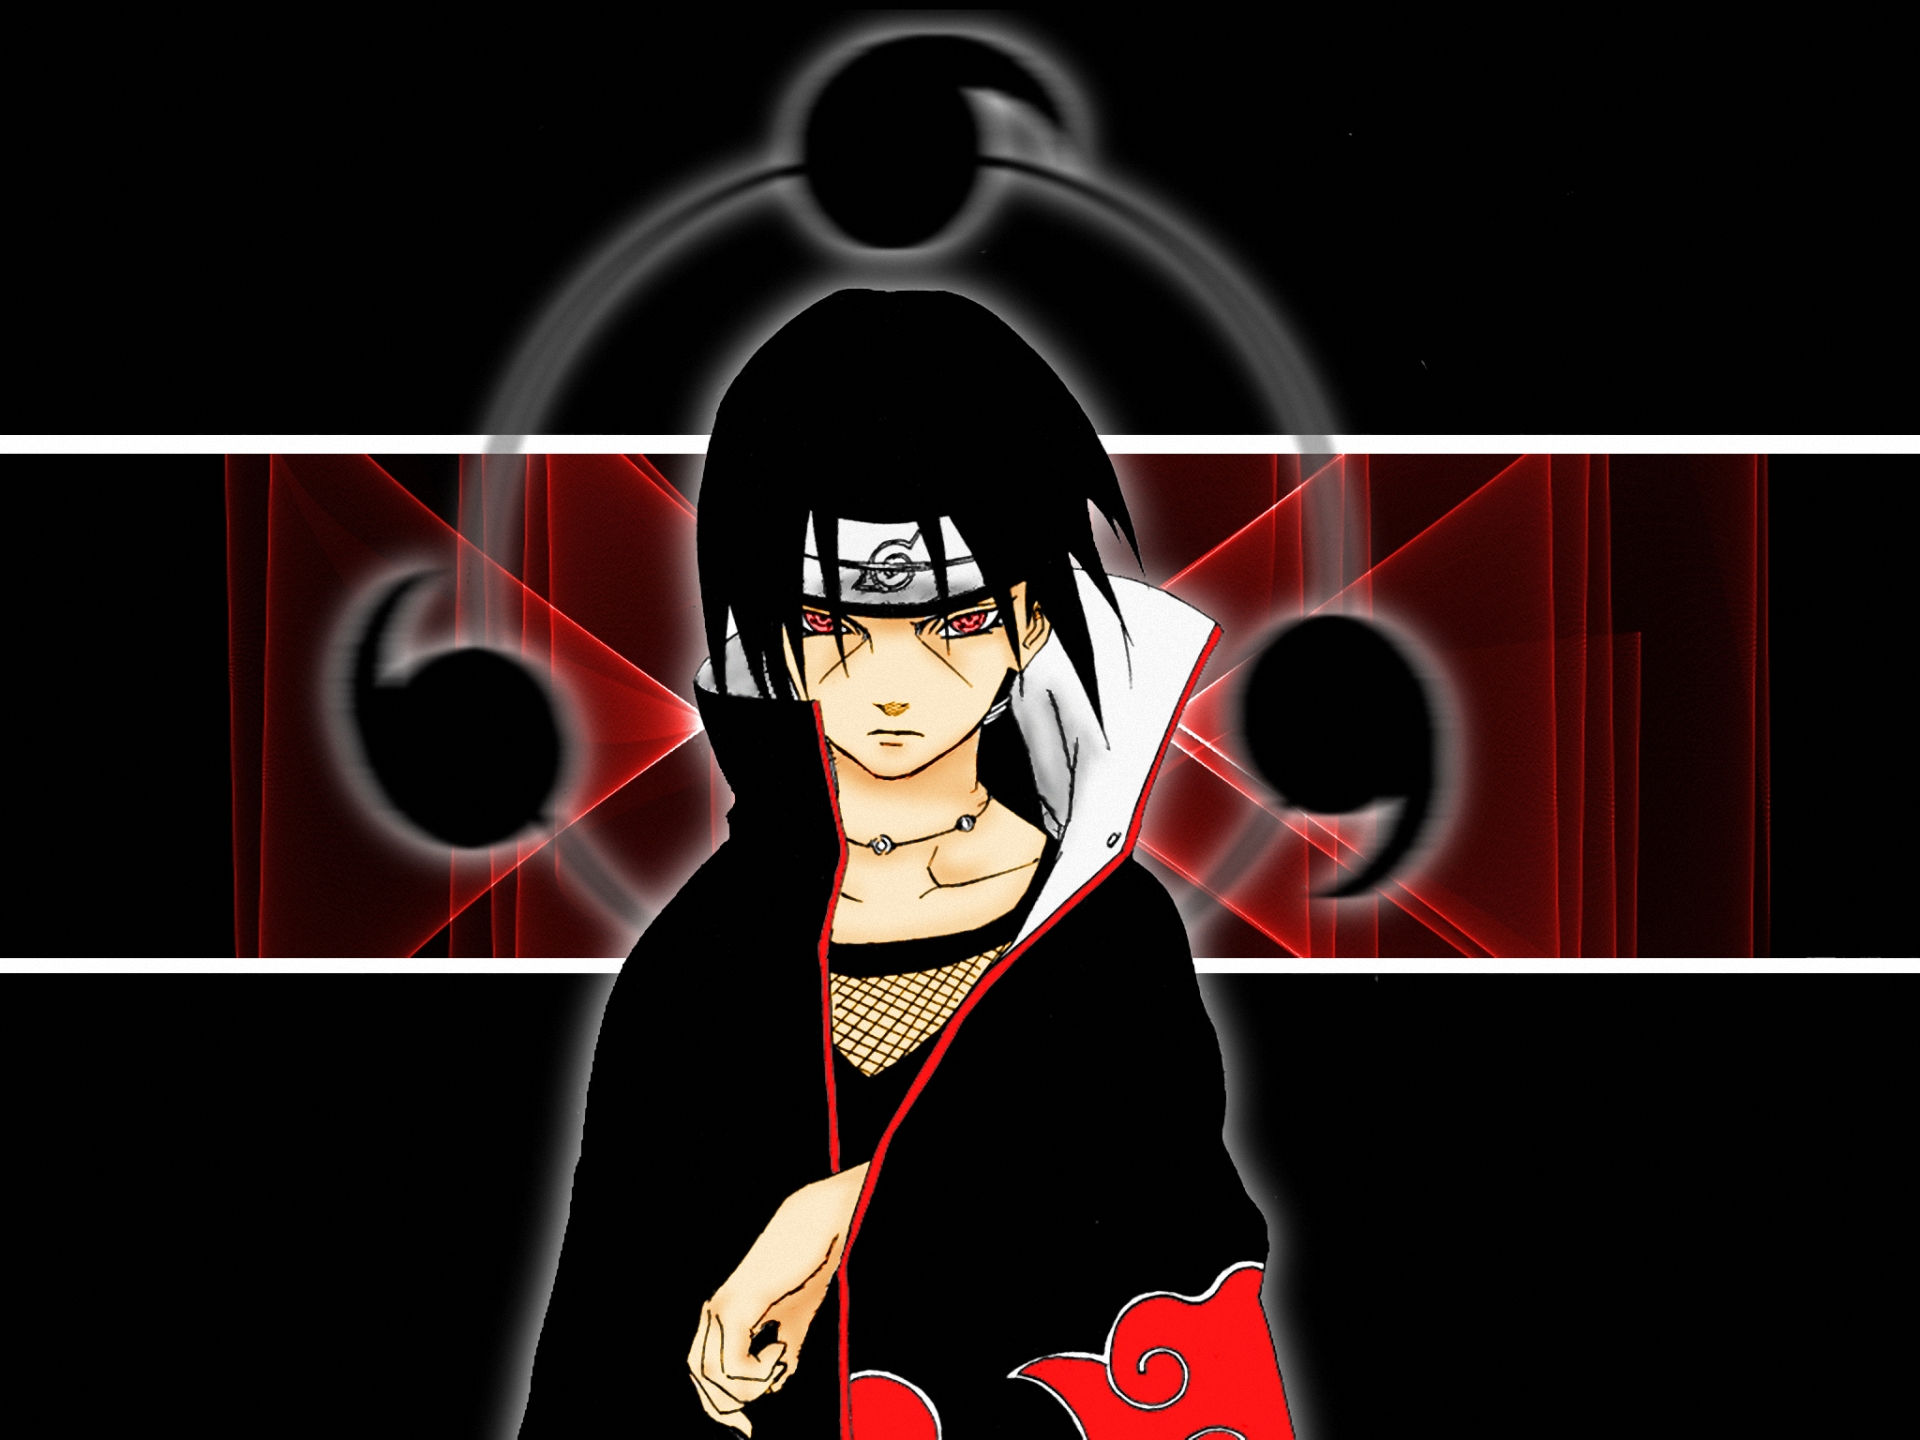 Descarga gratuita de fondo de pantalla para móvil de Kaichou, Animado, Naruto.